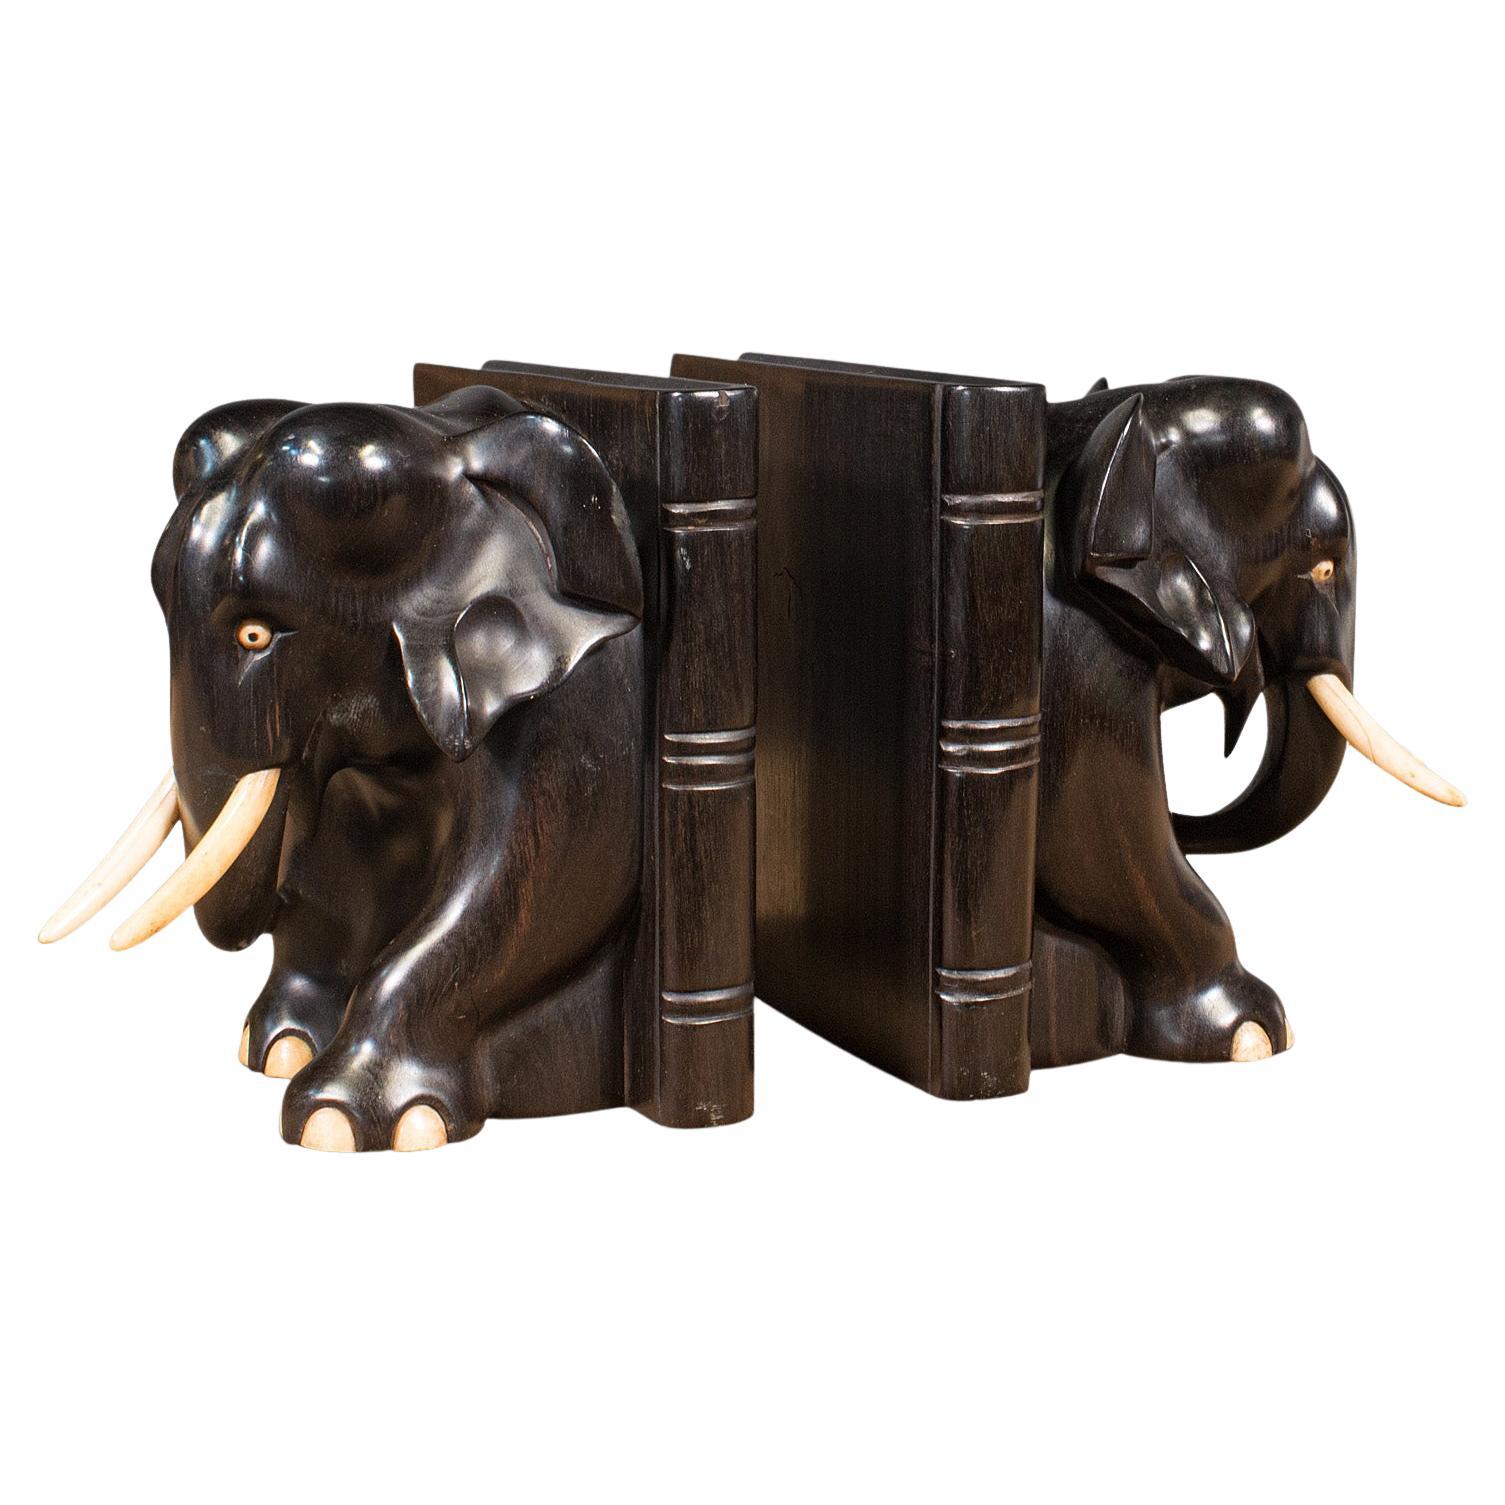 Paar antike Elefanten-Buchstützen, englisch, Ebenholz, geschnitzt, Bücherregal, viktorianisch